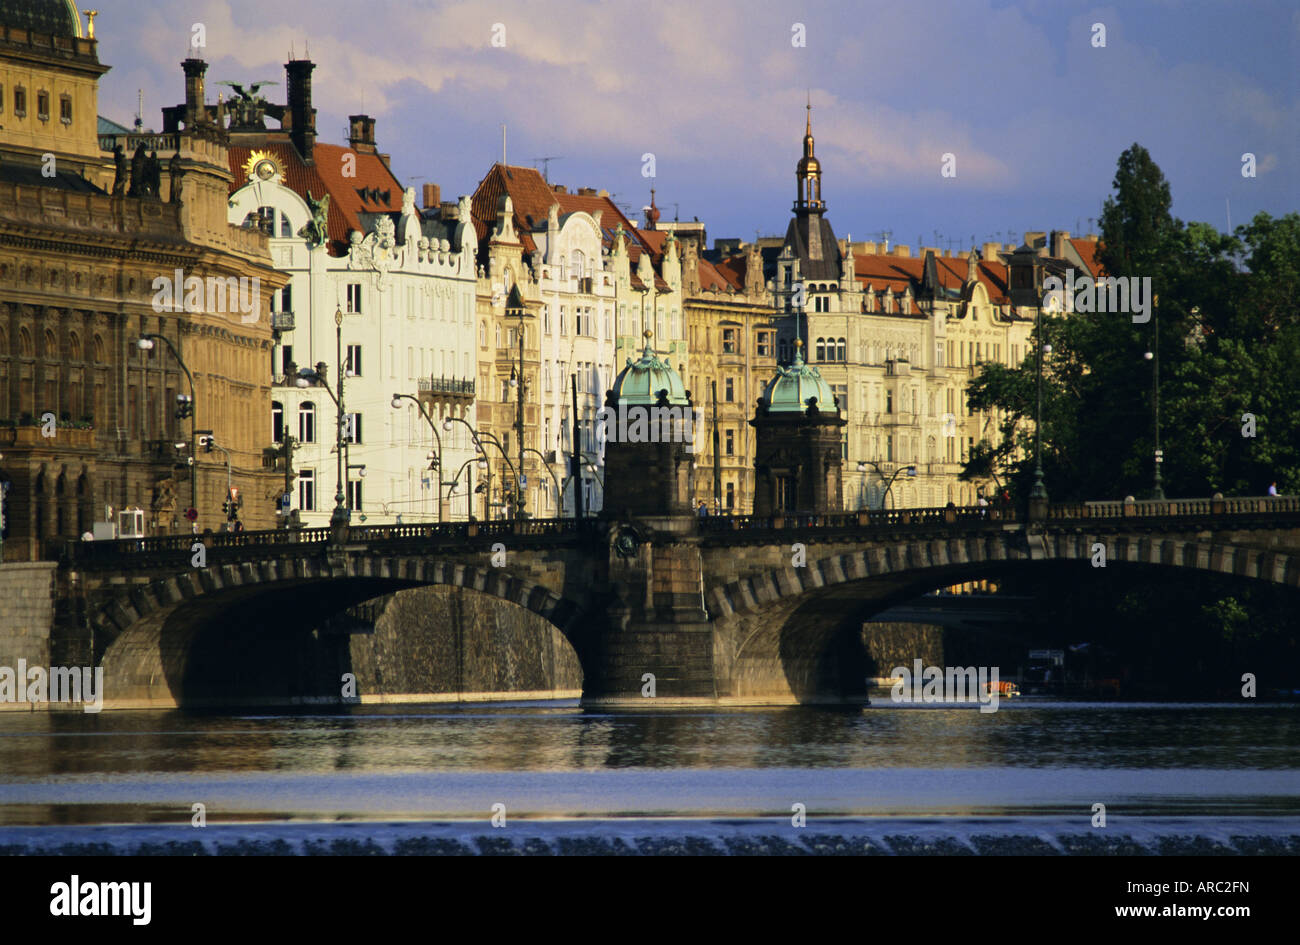 Das Nationaltheater und die Häuser entlang der Moldau, Prag, Tschechische Republik, Europa Stockfoto